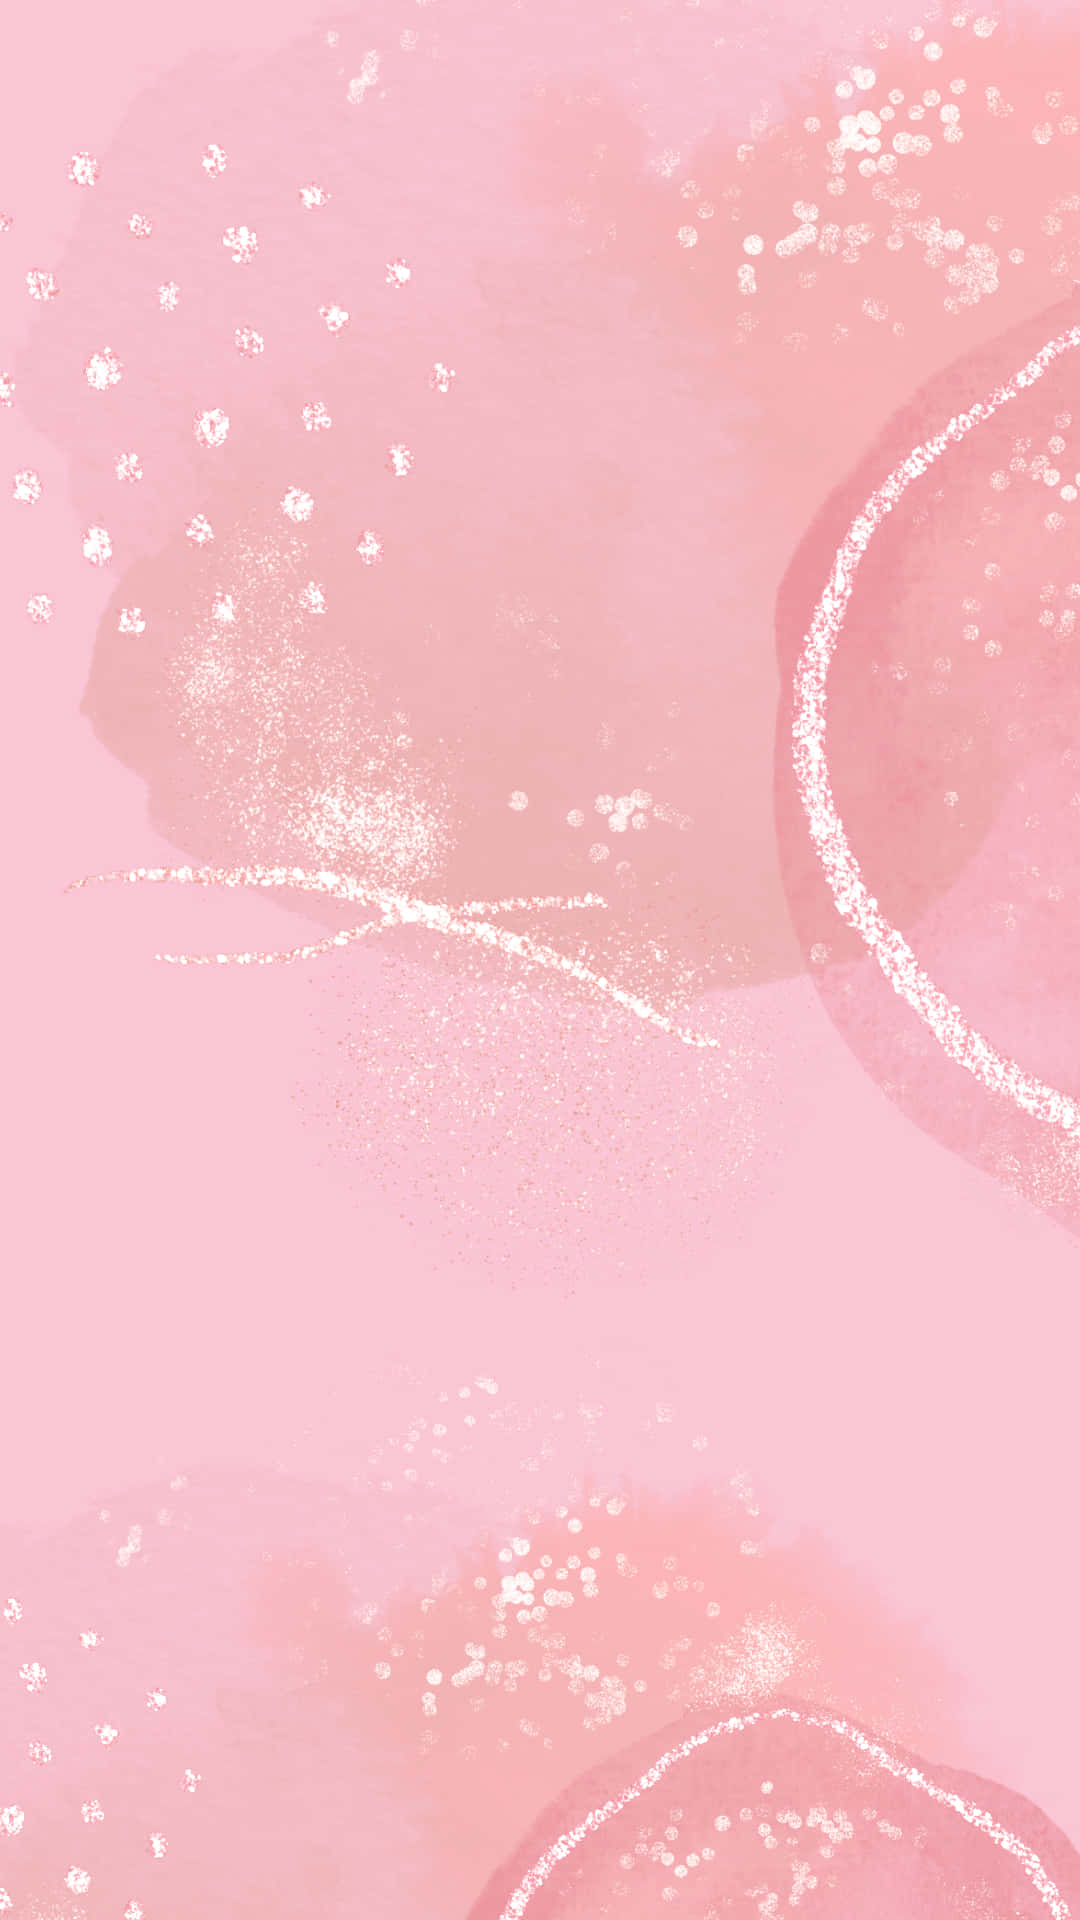 Chic og stilfuld, gør dette enkle pink wallpaper et elegant udsagn. Wallpaper